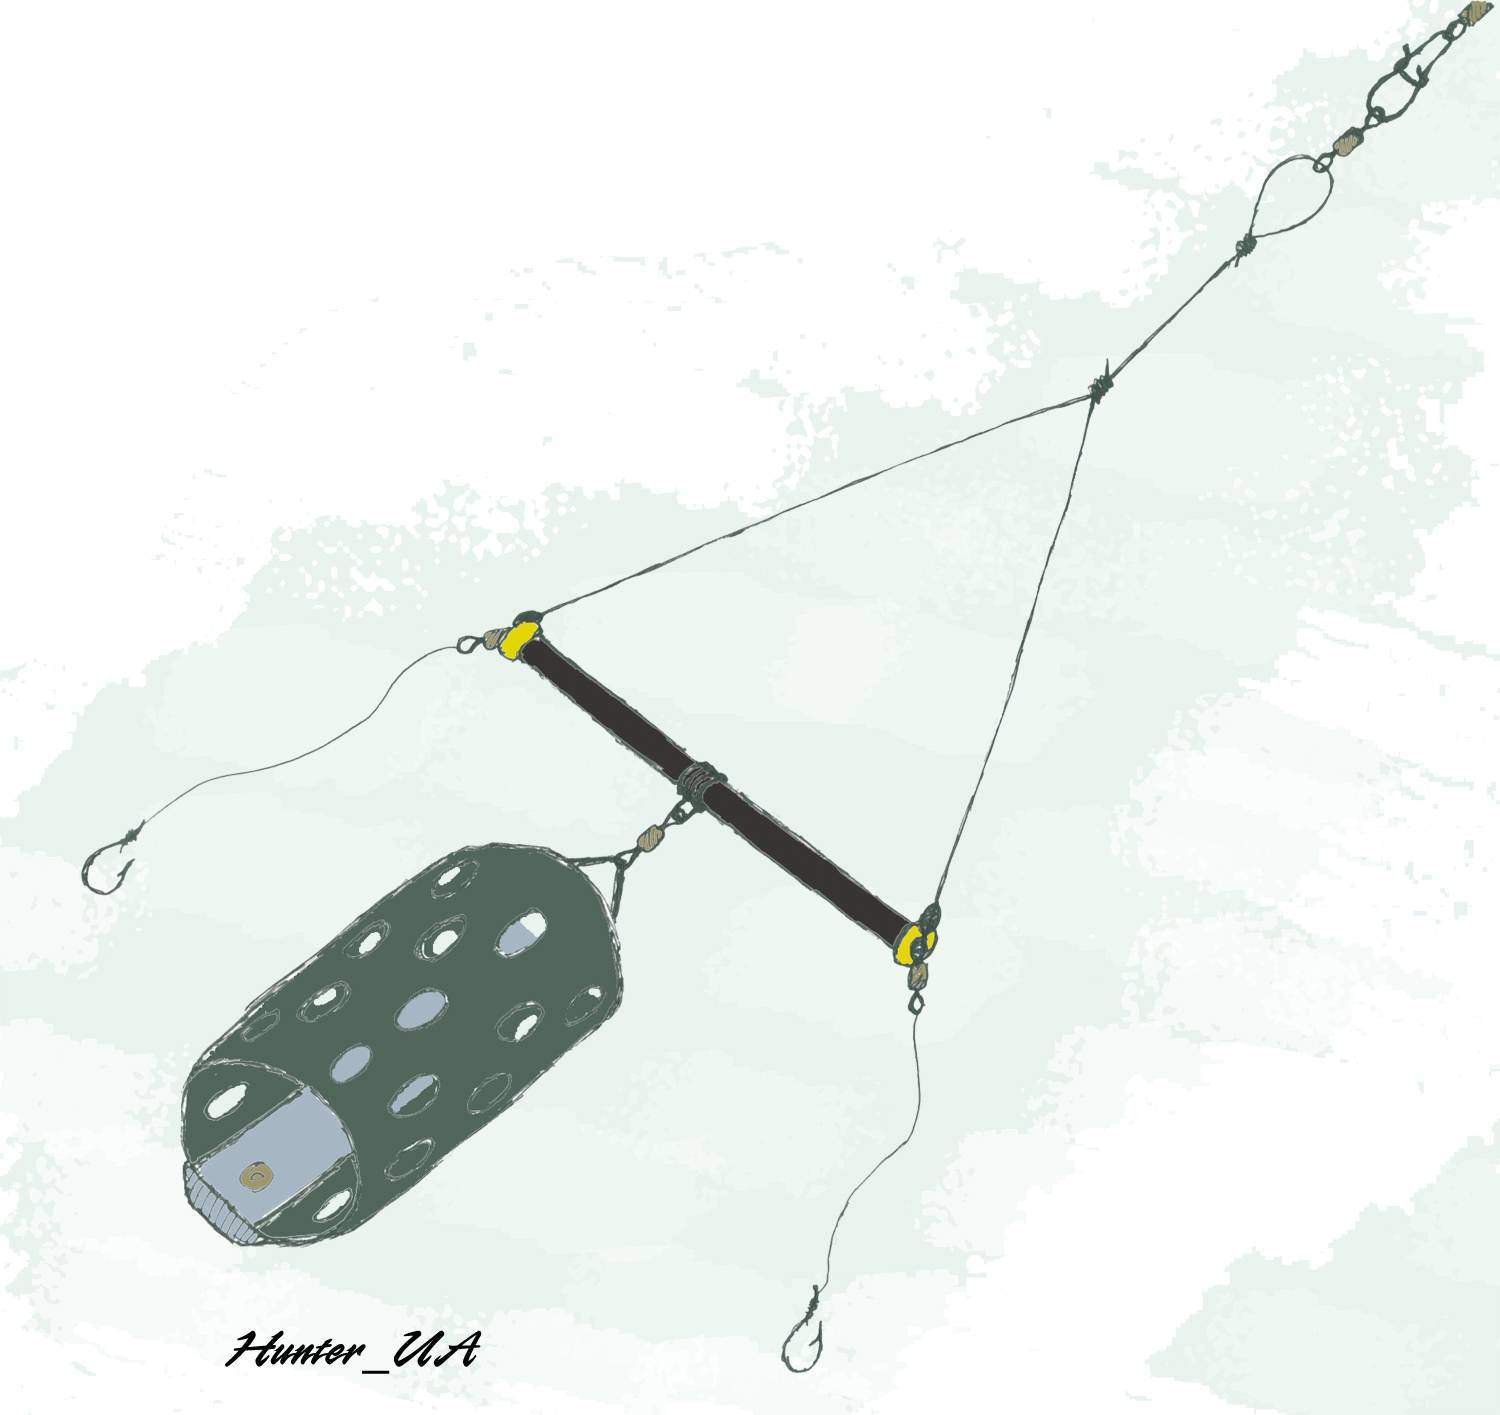 Зимняя кормушка - рыбалка с берега и со льда, секреты зимней наживки, особенности установки оборудования